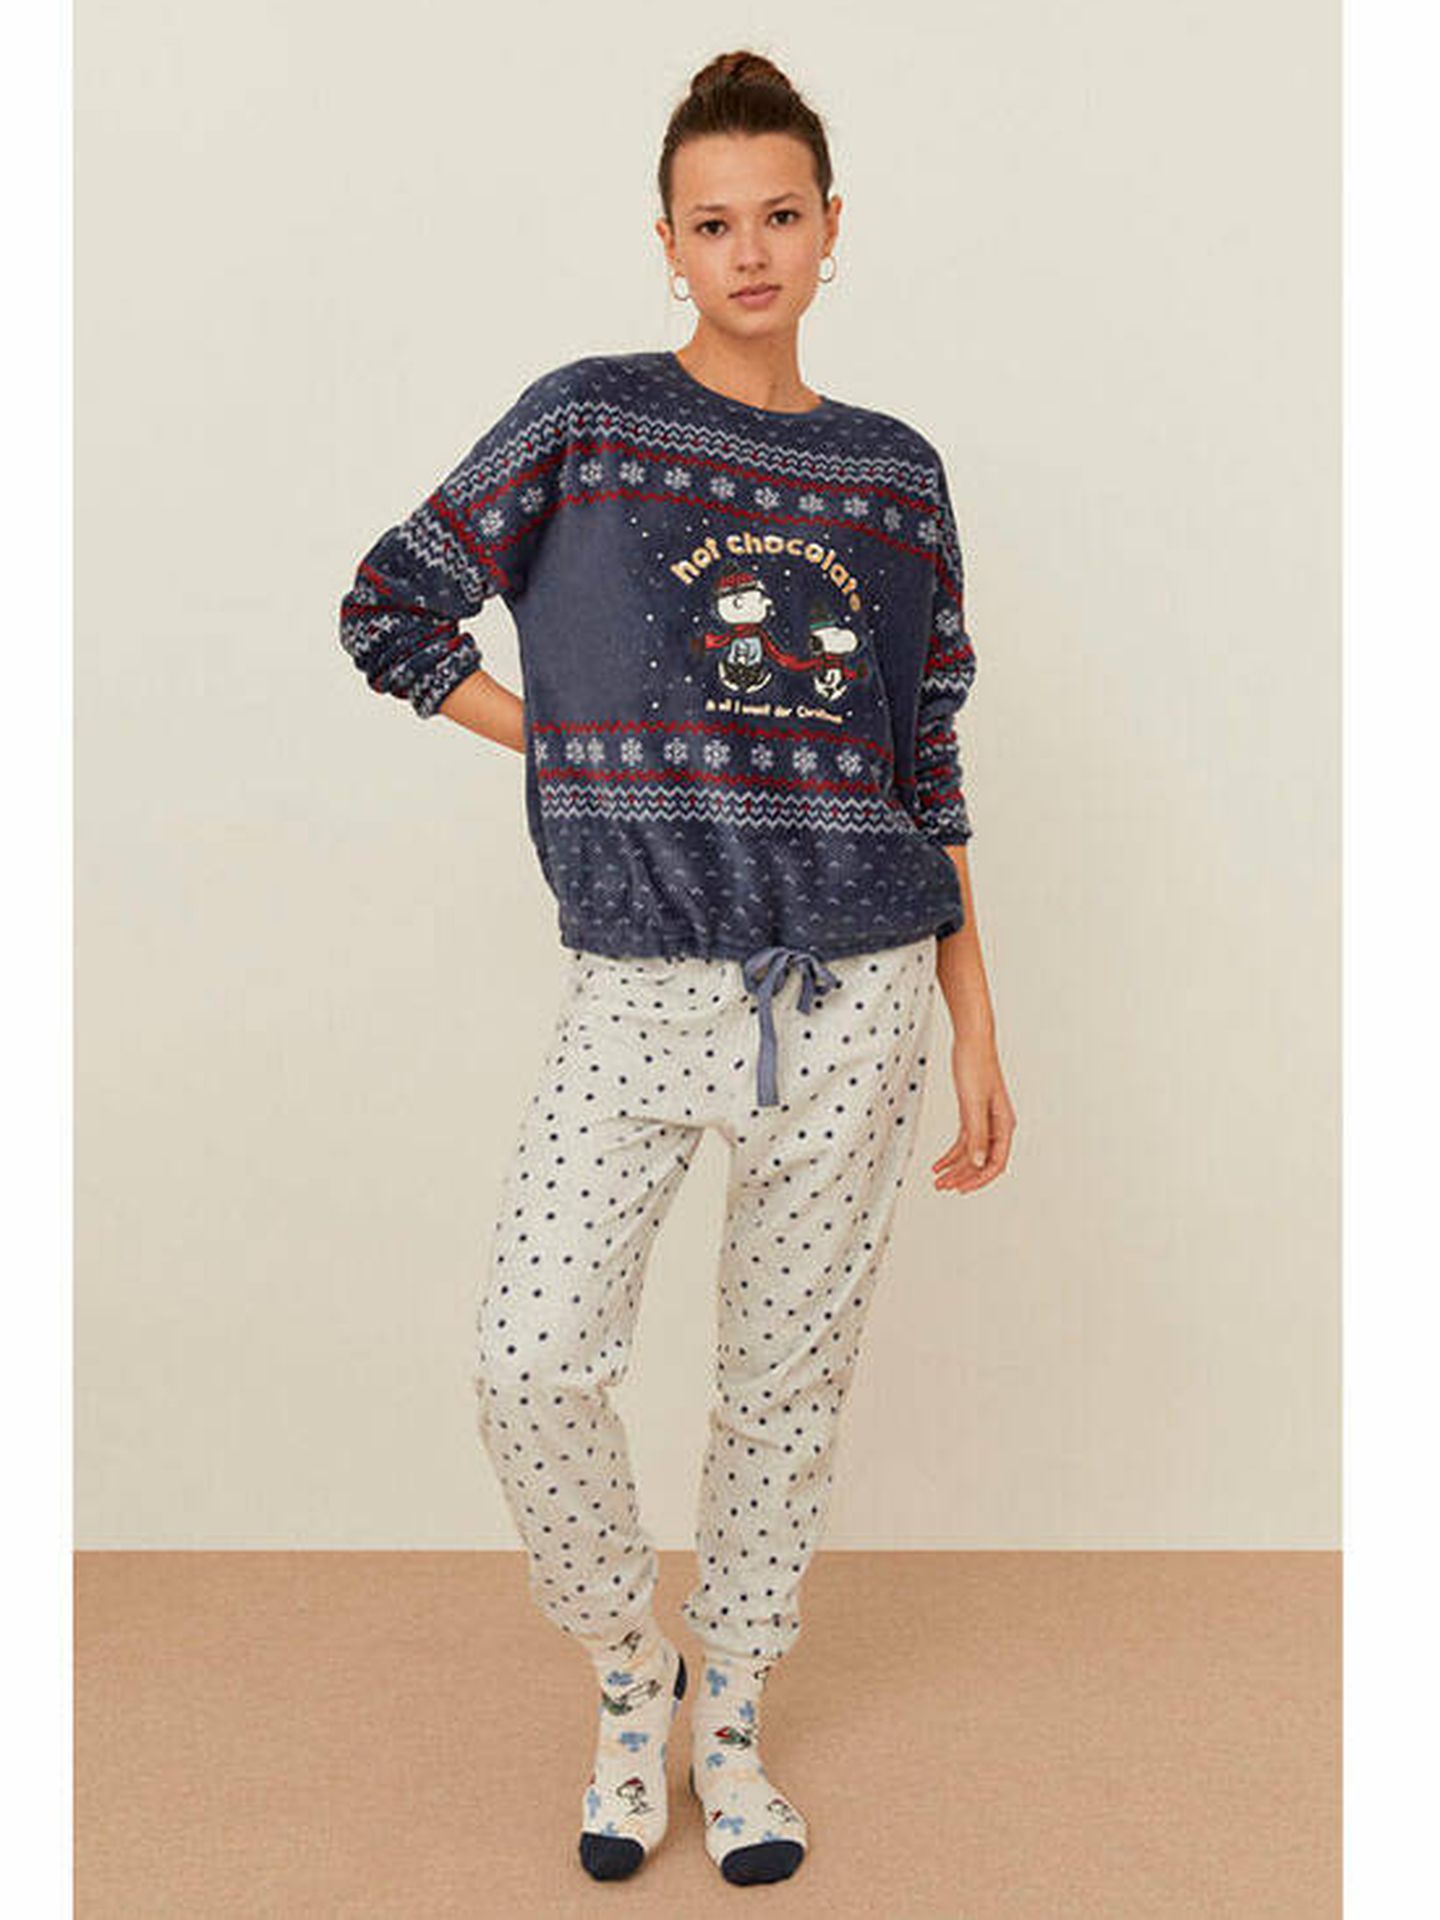 Los pijamas de Navidad más ideales. (Cortesía)